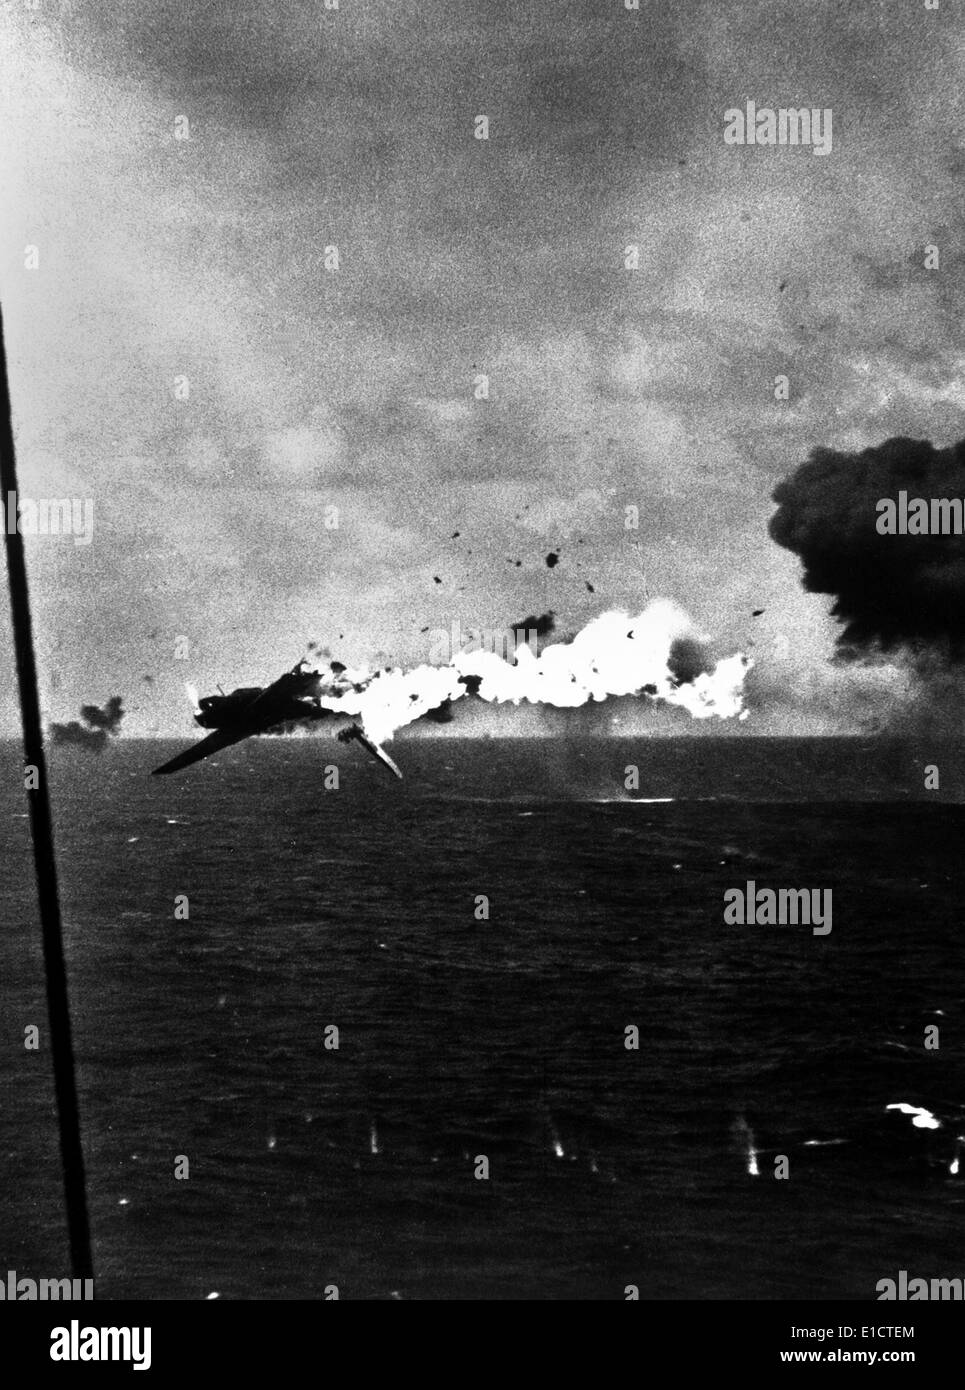 Japanische Bomber explodiert nach direkt von 5-Zoll-Hülle von USS Yorktown, 4. Dezember 1943 getroffen. Aus Kwajalein-Atoll. Dem 2. Weltkrieg Stockfoto